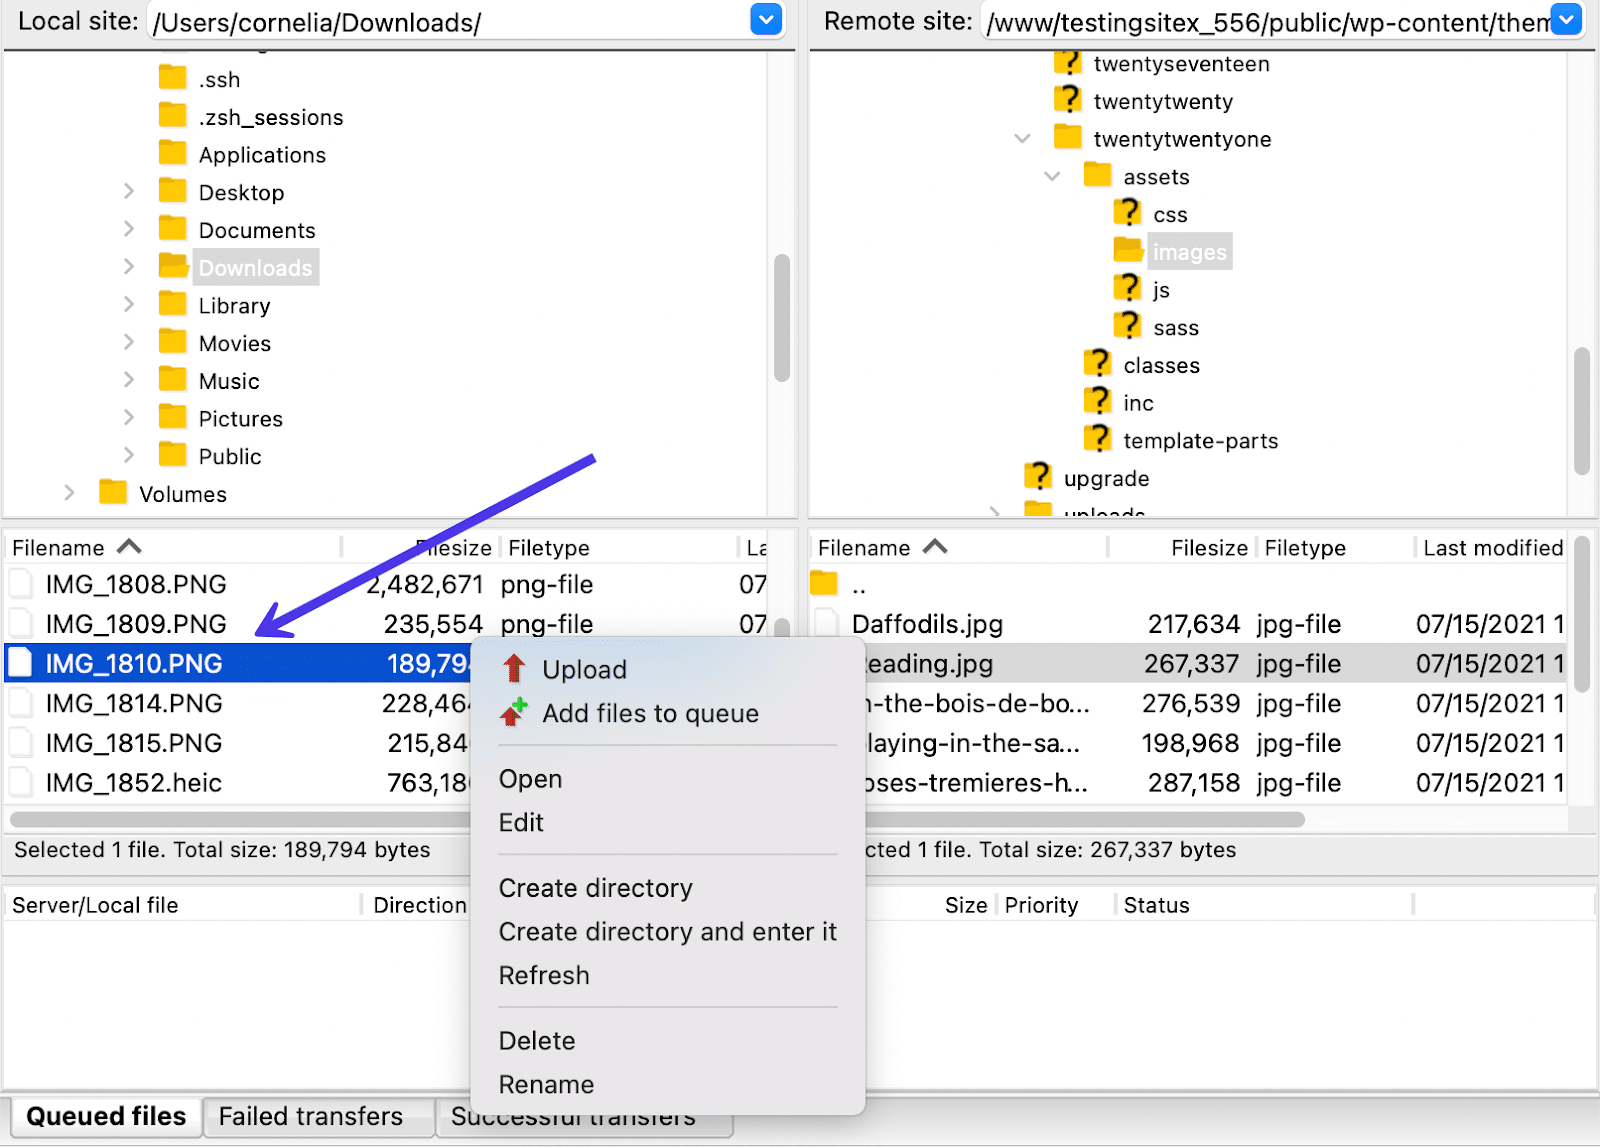 Clicar com o botão direito do mouse no módulo Local Directory mostra uma variedade de opções para esses arquivos